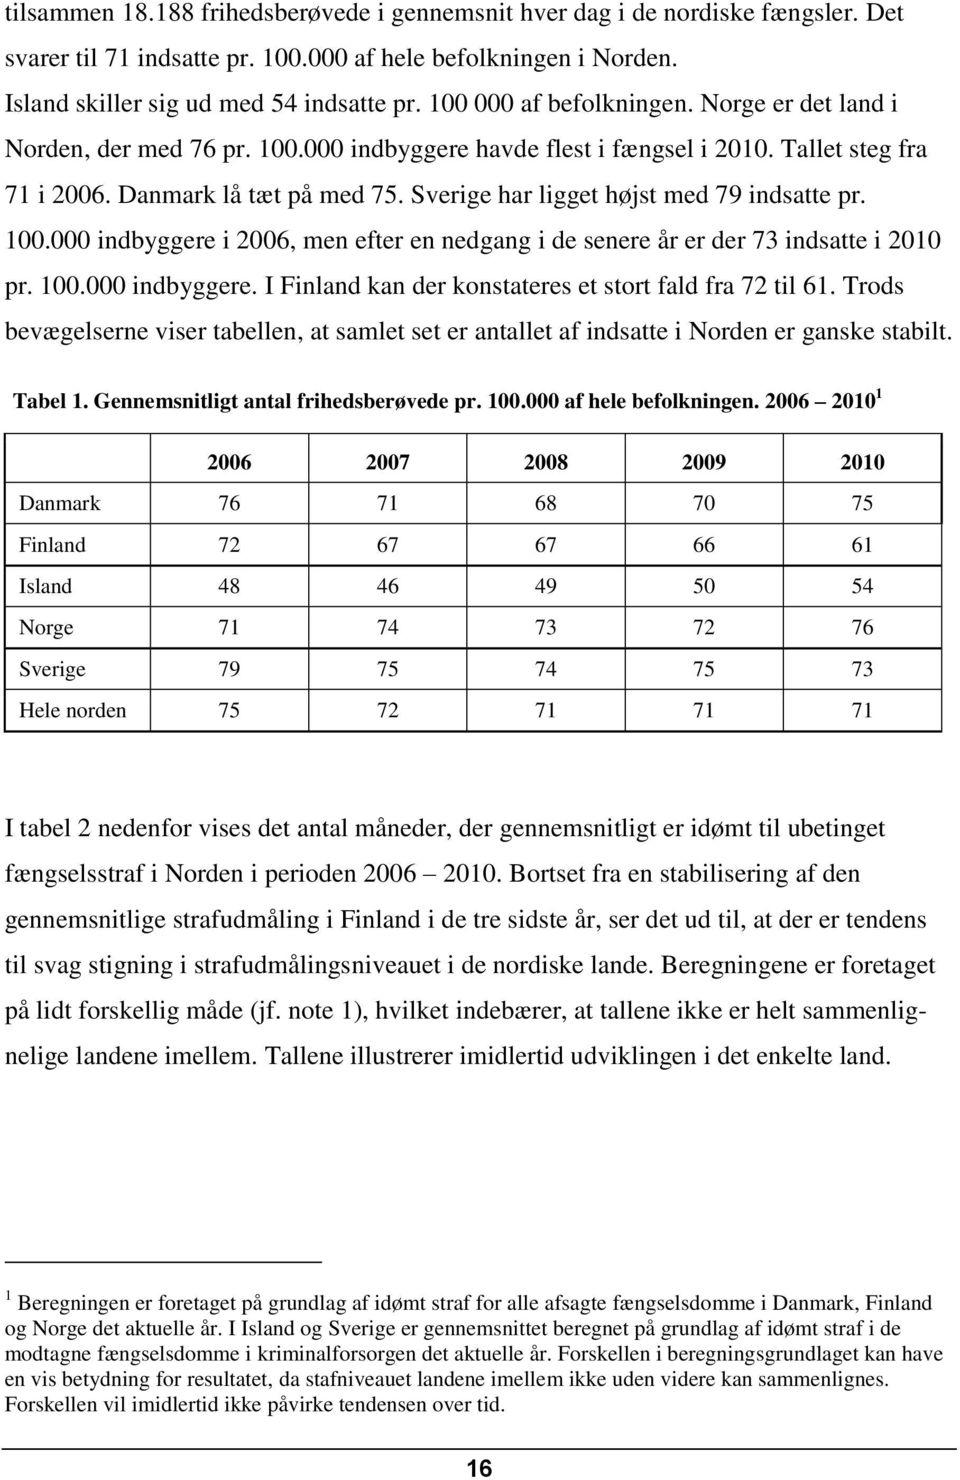 Sverige har ligget højst med 79 indsatte pr. 100.000 indbyggere i 2006, men efter en nedgang i de senere år er der 73 indsatte i 2010 pr. 100.000 indbyggere. I Finland kan der konstateres et stort fald fra 72 til 61.